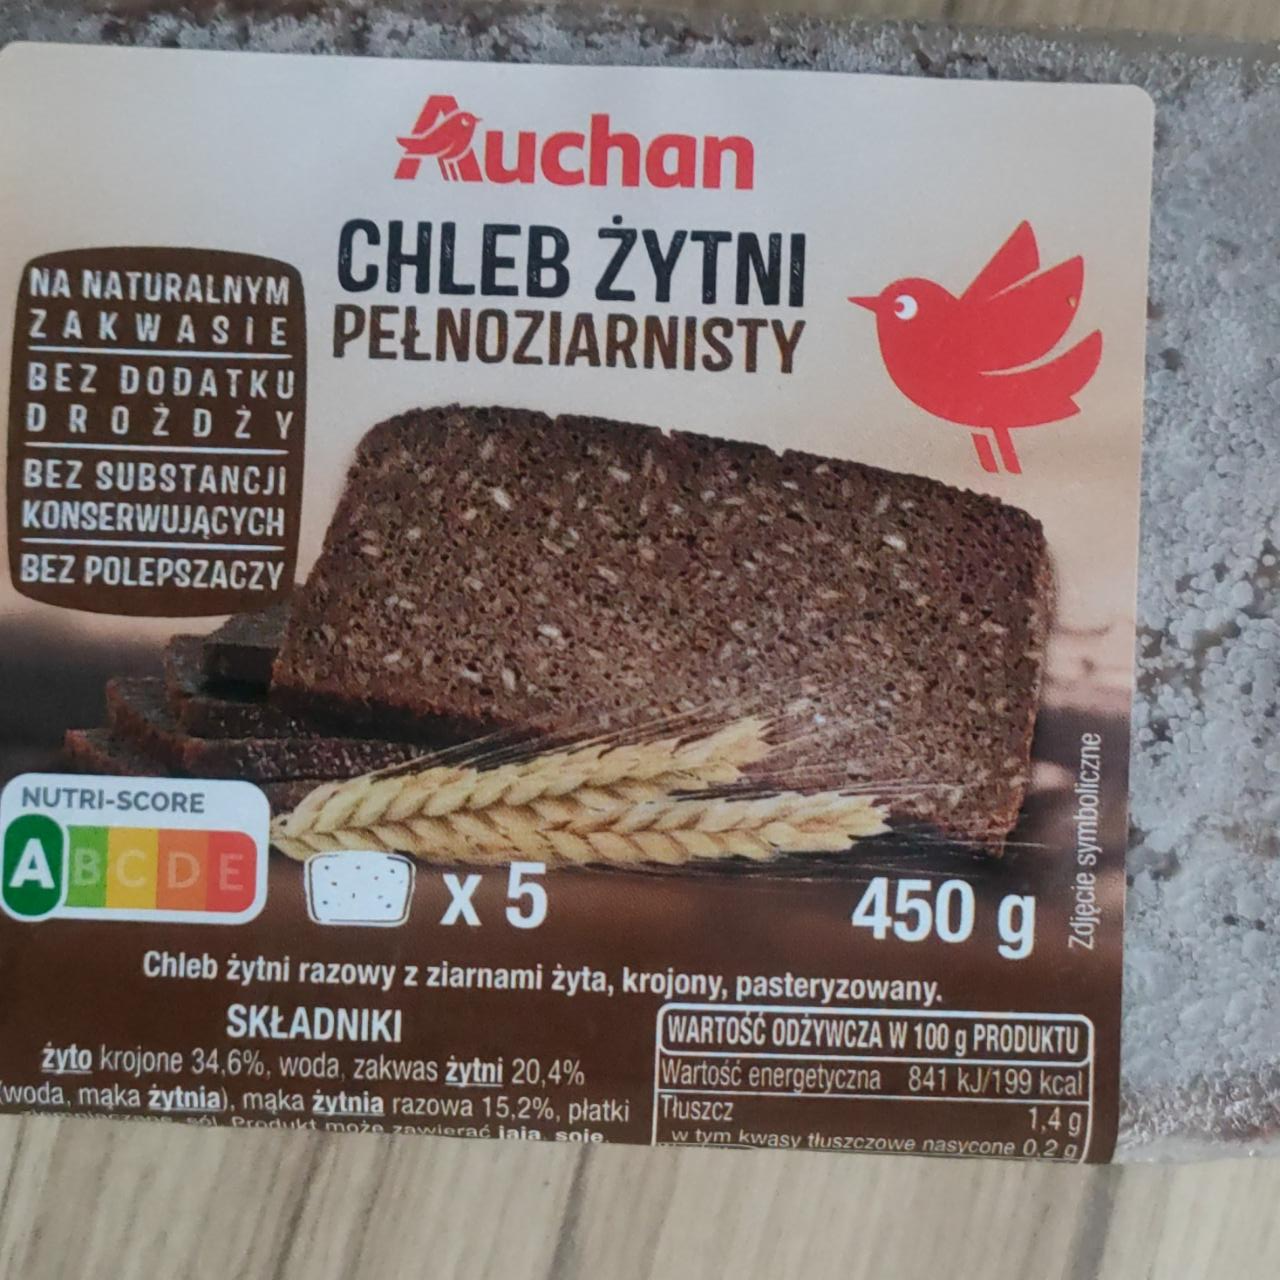 Fotografie - Chleb żytni pełnoziarnisty Auchan